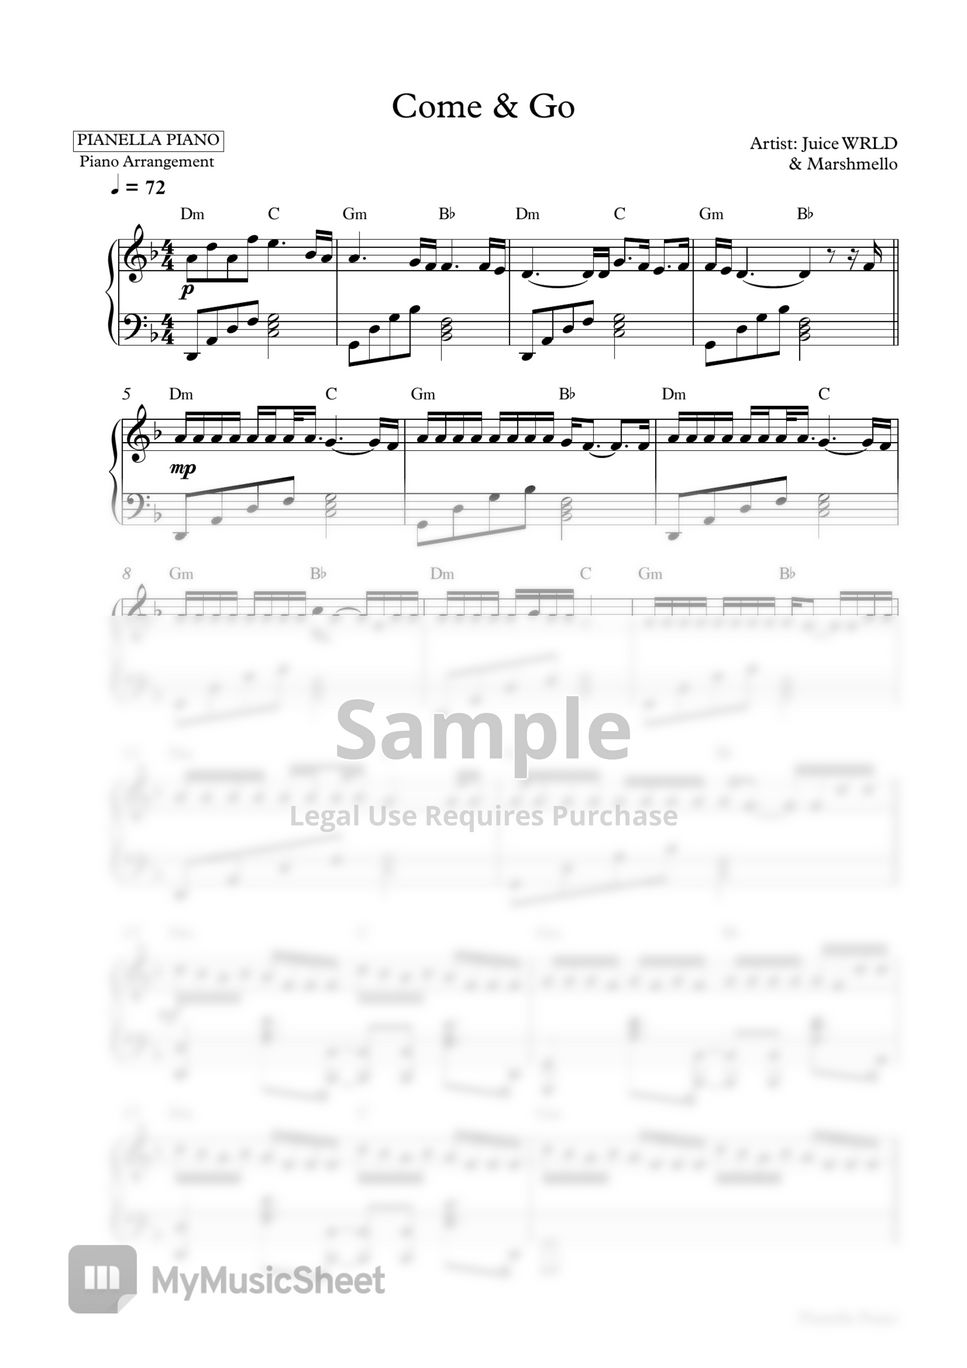 Juice WRLD & Marshmello - Come & Go (Piano Sheet) by Pianella Piano